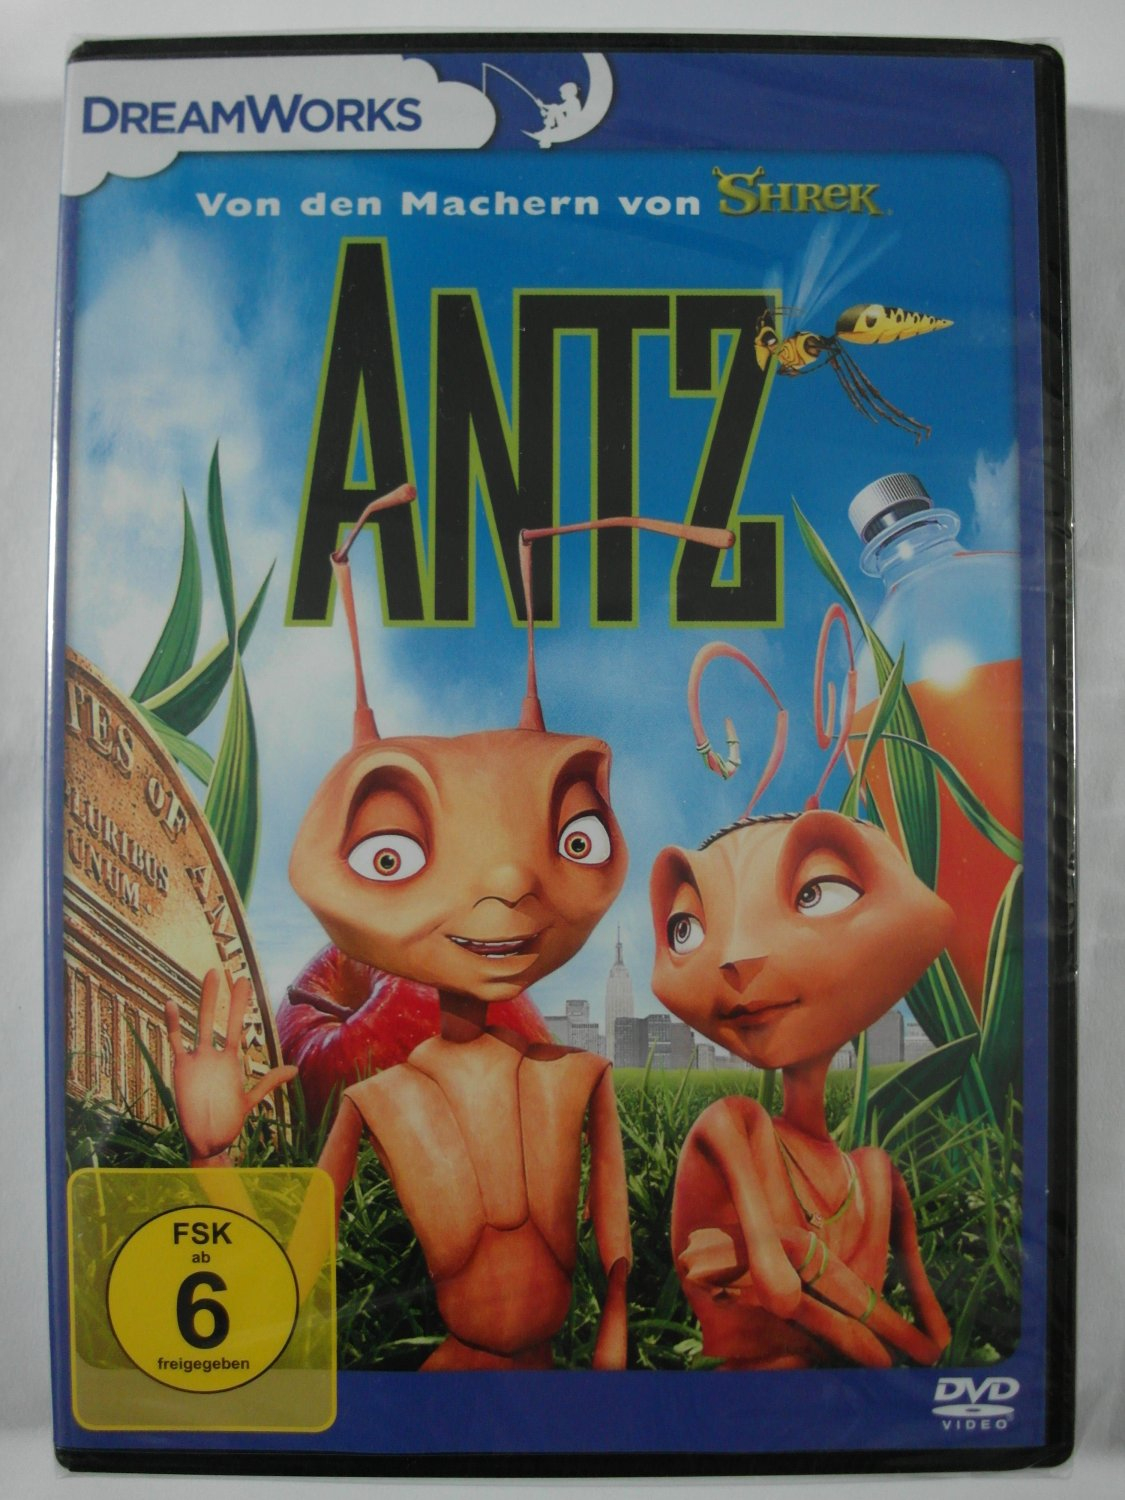 Antz - Dreamworks Animation - Ameisen Held Z - Von Machern Von Shrek -  Kinder Familie Kult concernant Film D Animation Dreamworks